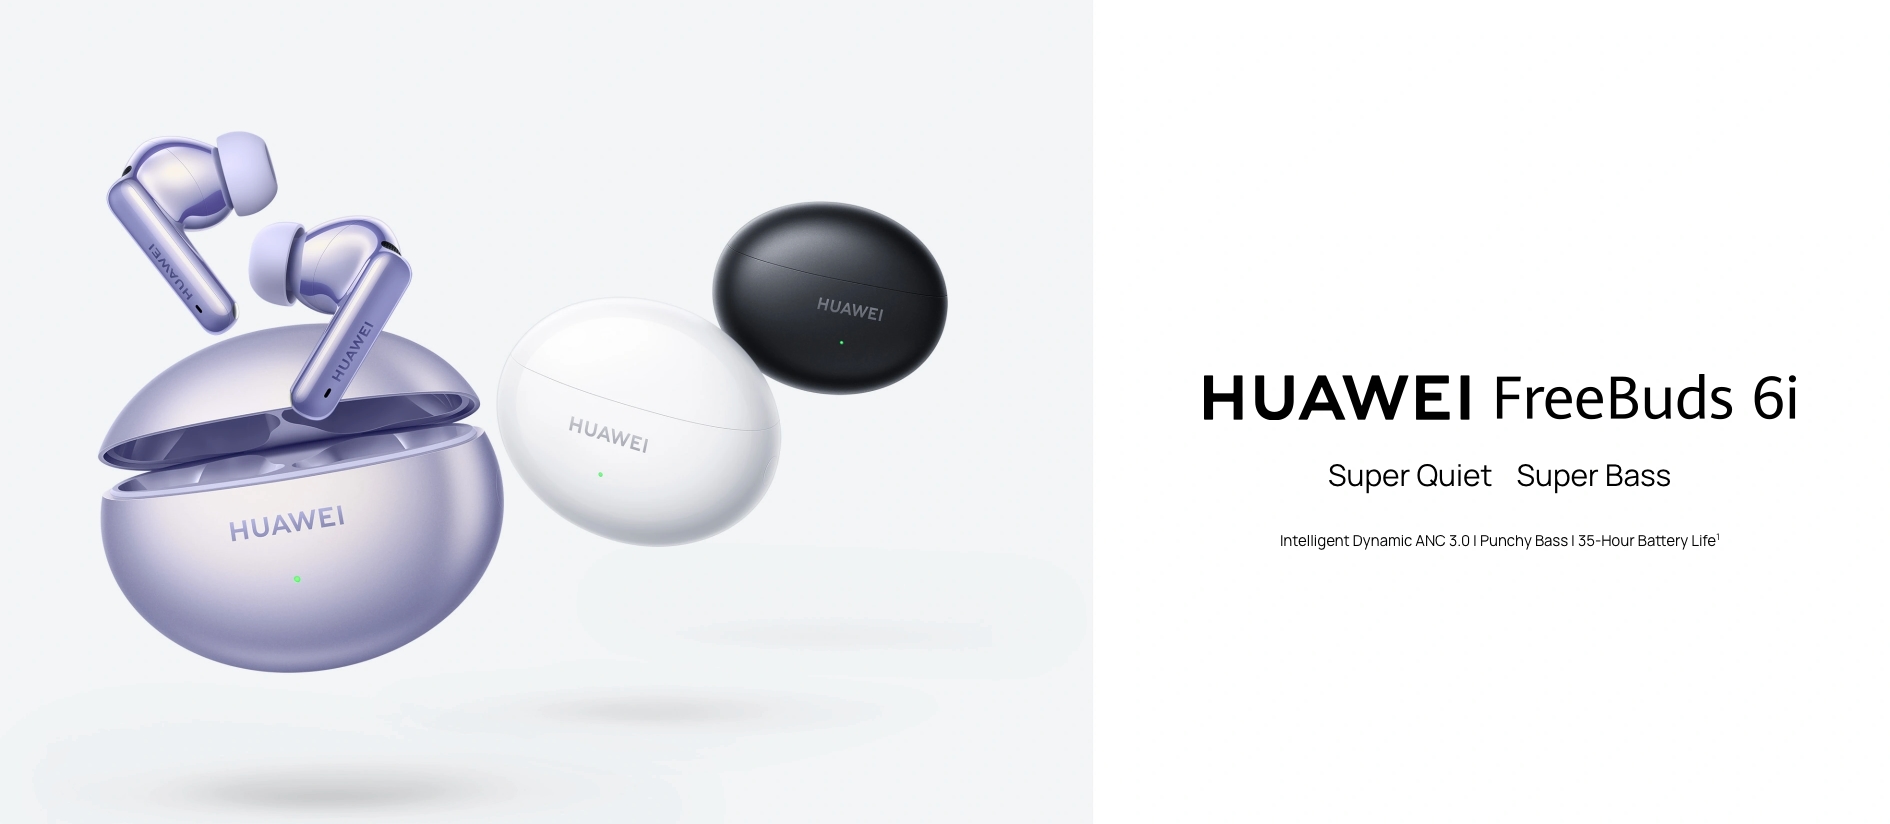 Huawei FreeBuds 6i: 11 mm drivers, ondersteuning voor Hi-Res Audio en tot 35 uur batterijduur